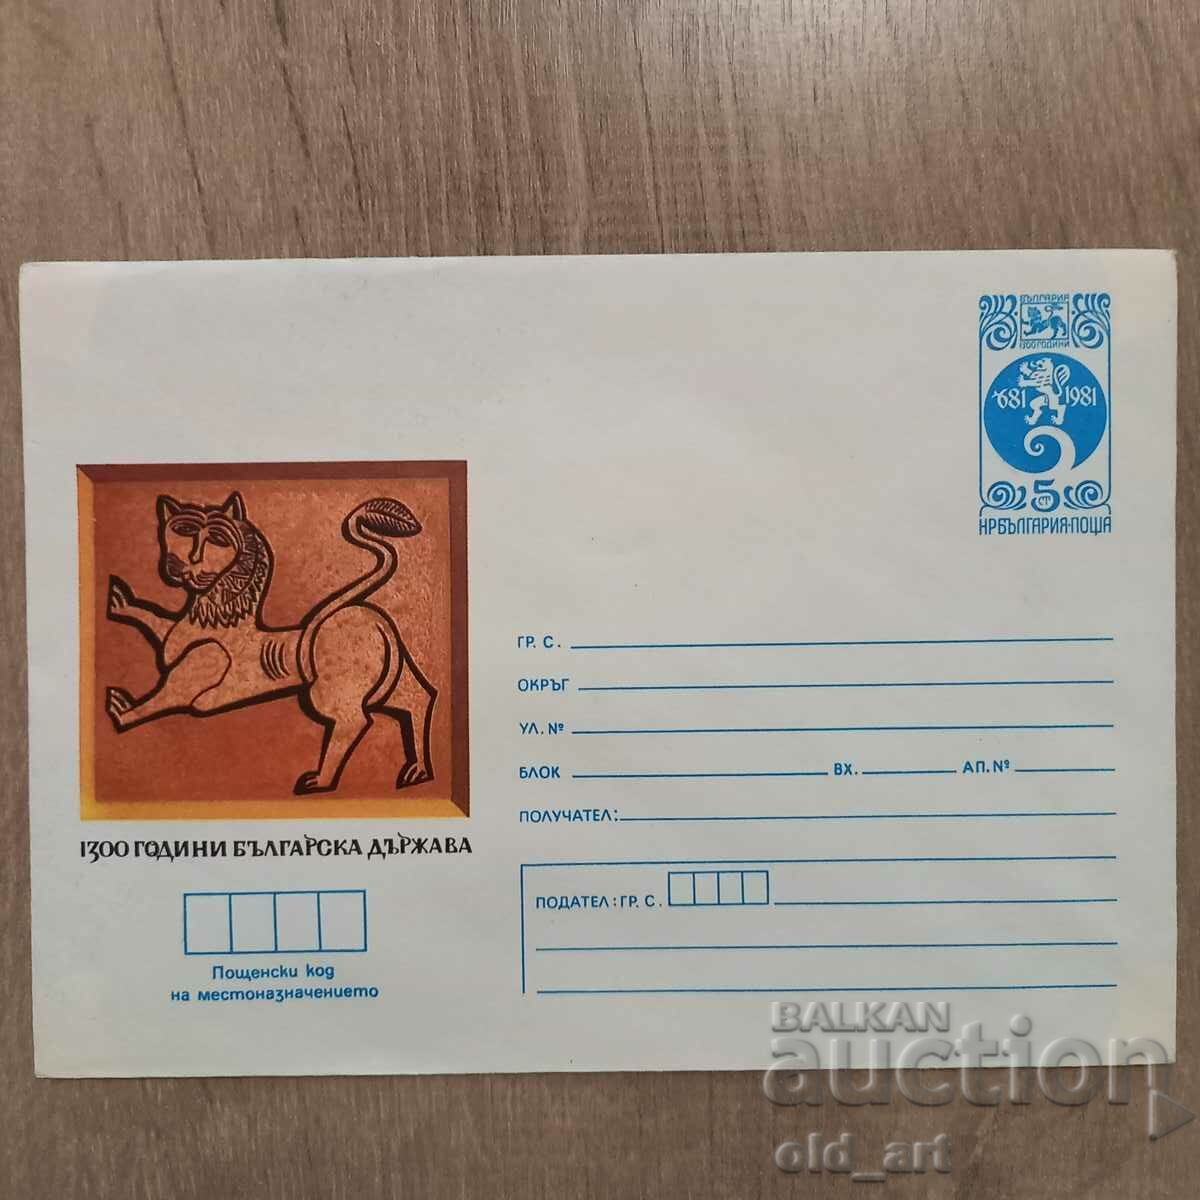 Postal envelope - 1300. Bulgarian state